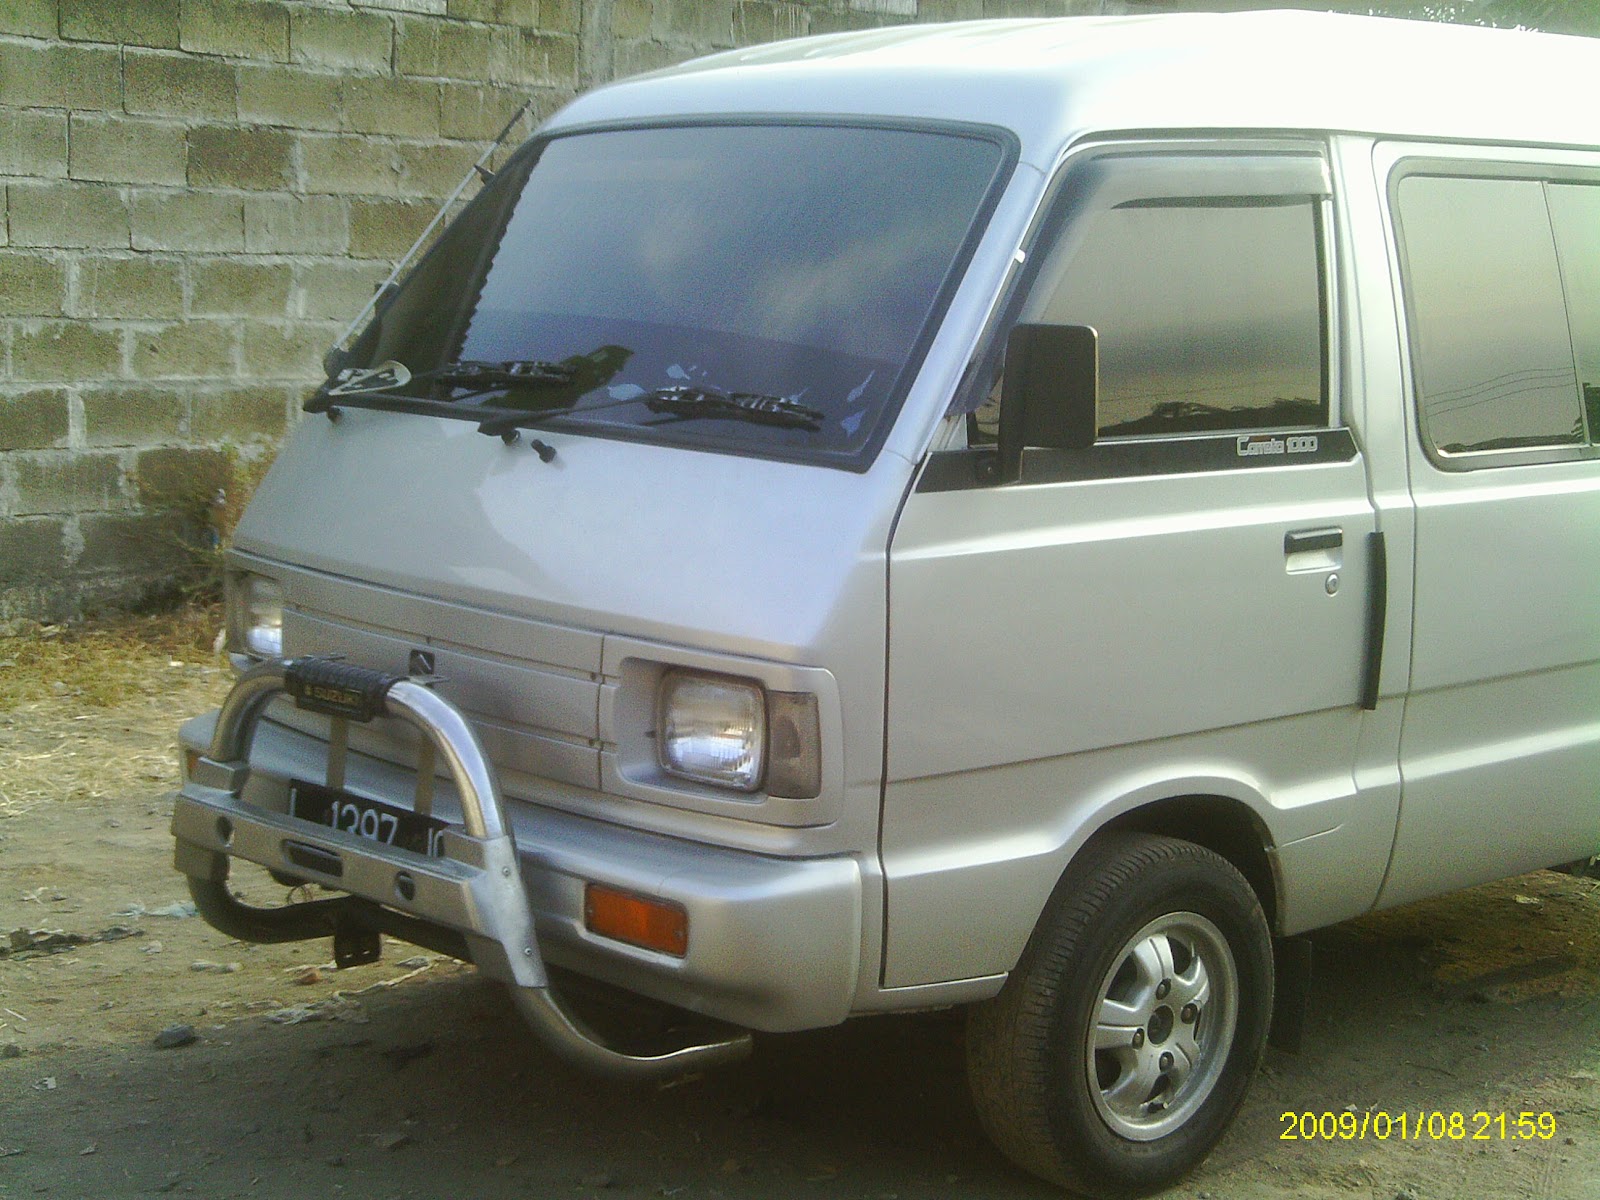  Jual  Beli Mobil  Bekas  Dijual  Suzuki Carreta tahun 2005 